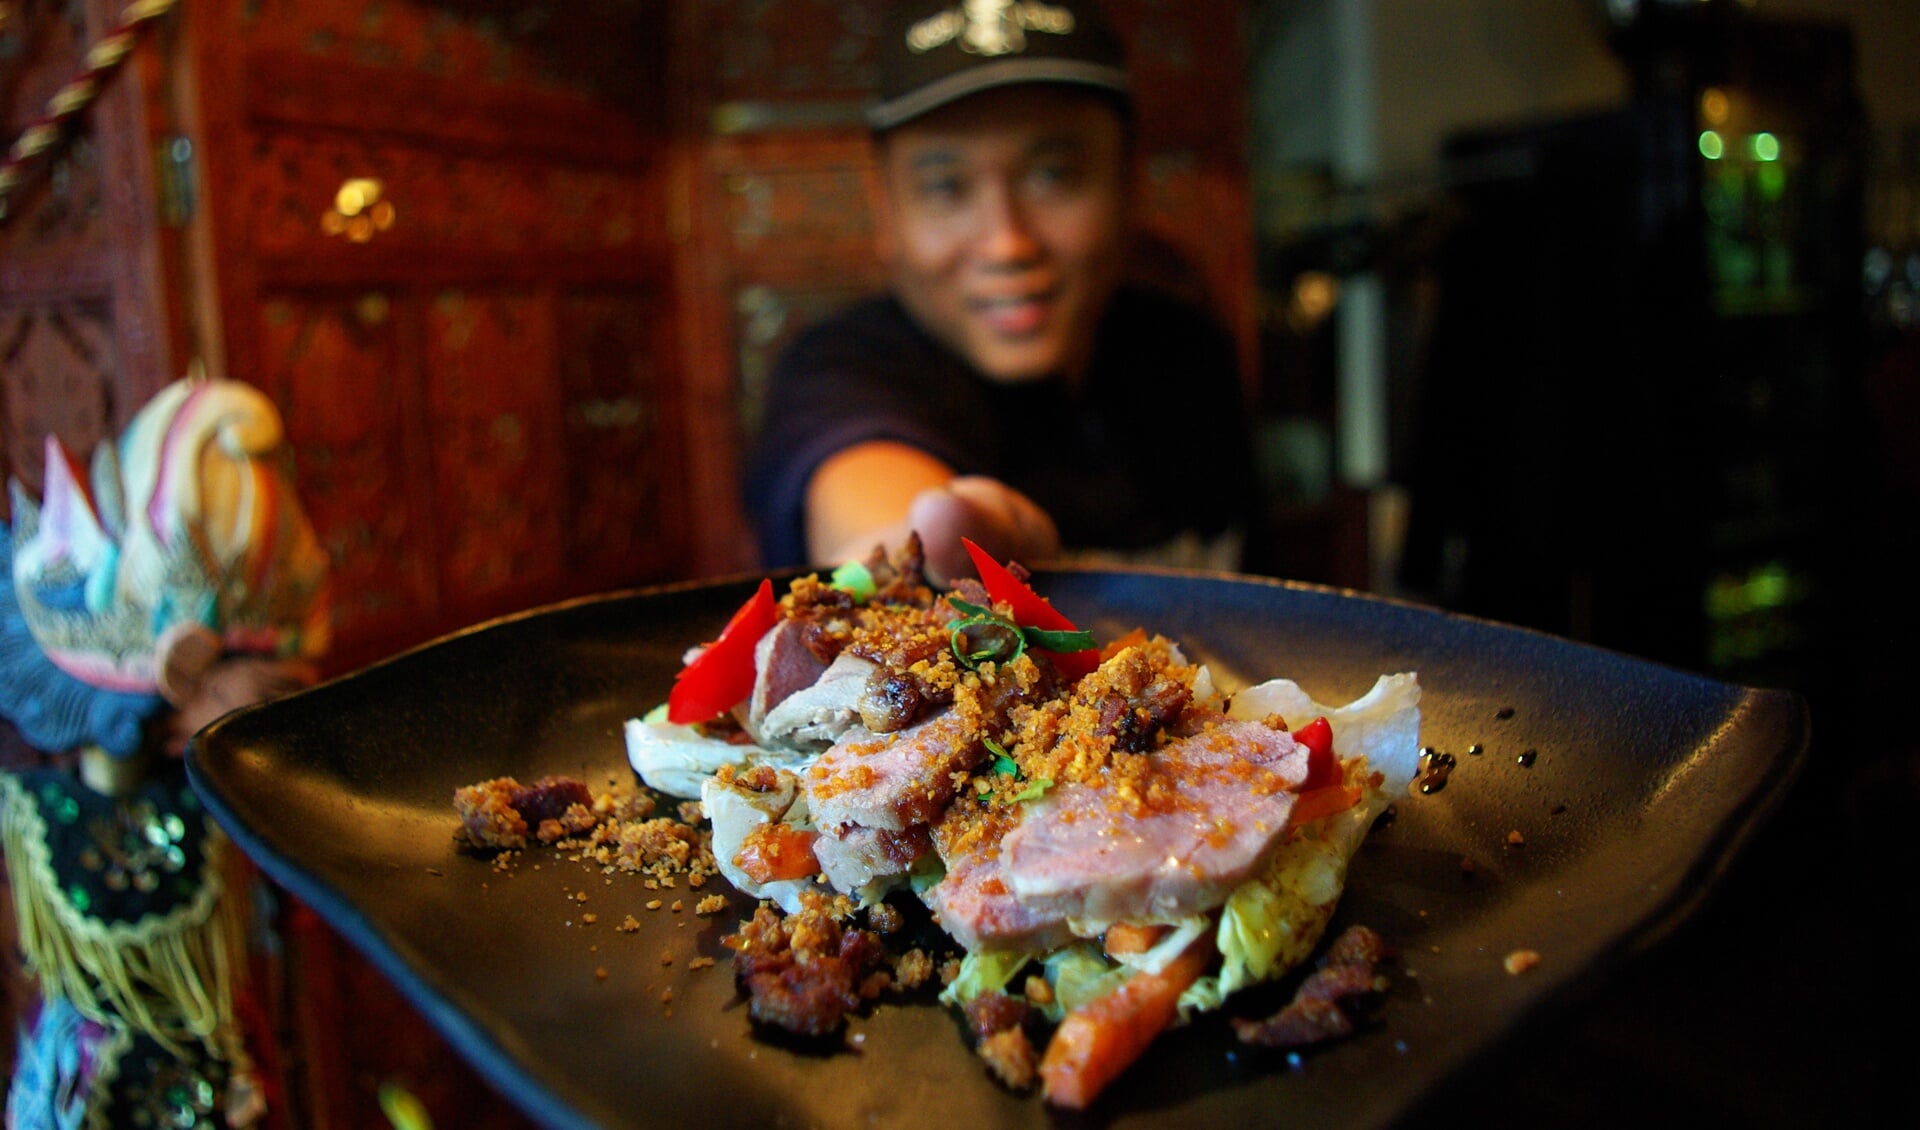 Chef-kok Hendri Yuswa showt één van de nieuwe voorgerechten: de salade eendenborst. 